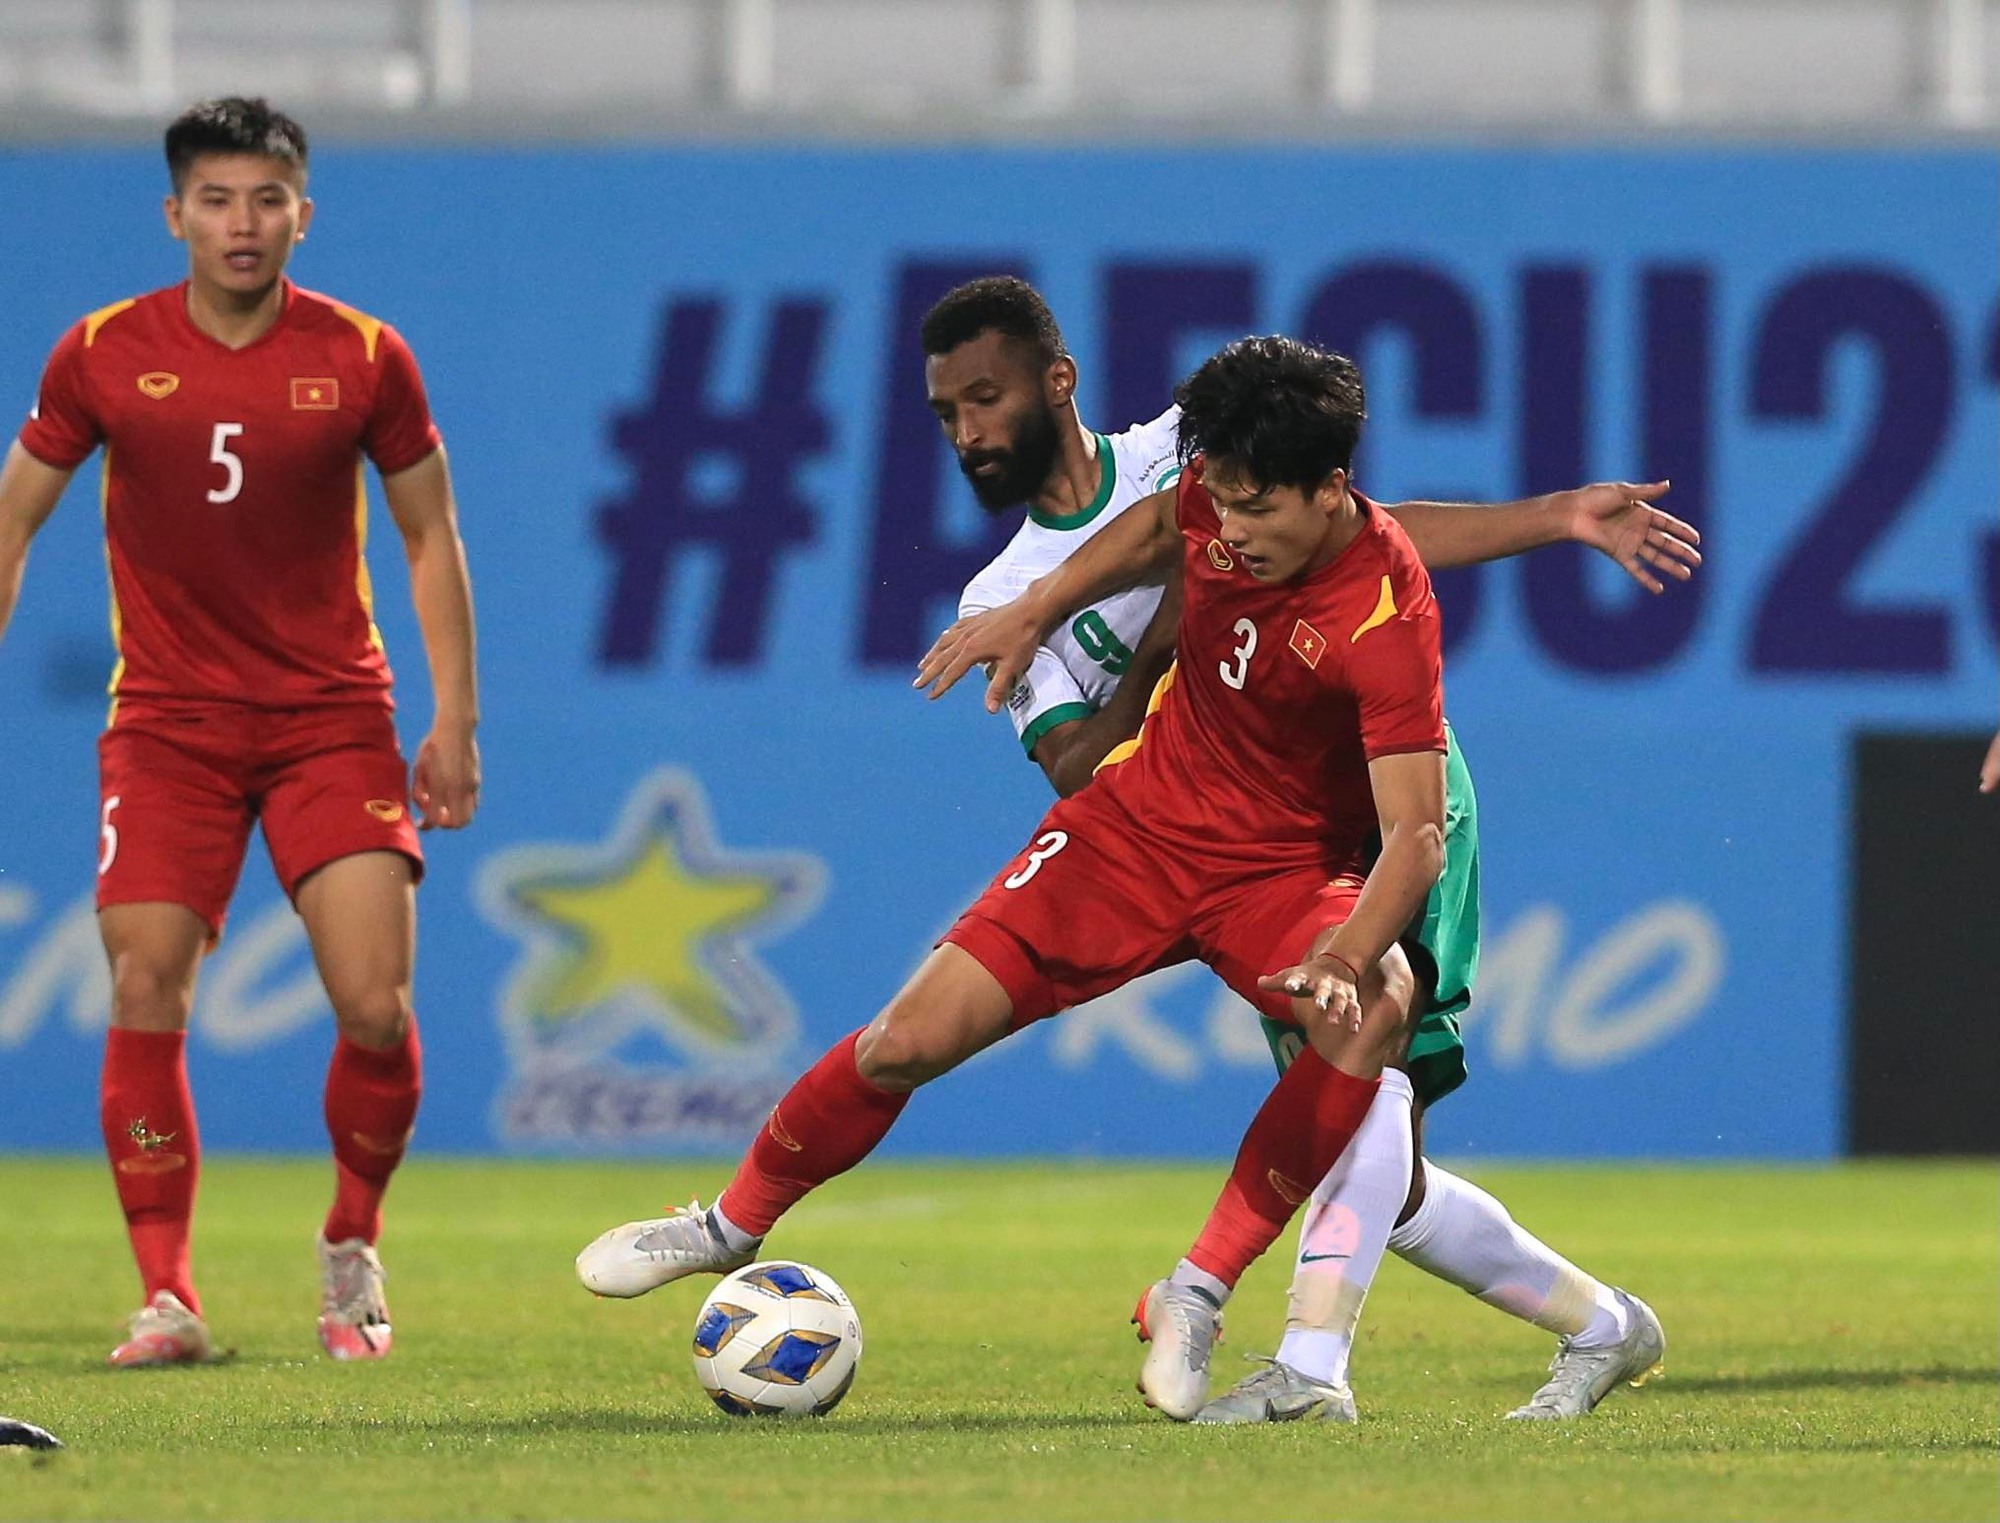 Lối chơi của U23 Việt Nam ở hiệp 2 với Ả Rập Saudi gây tranh cãi - Ảnh 2.